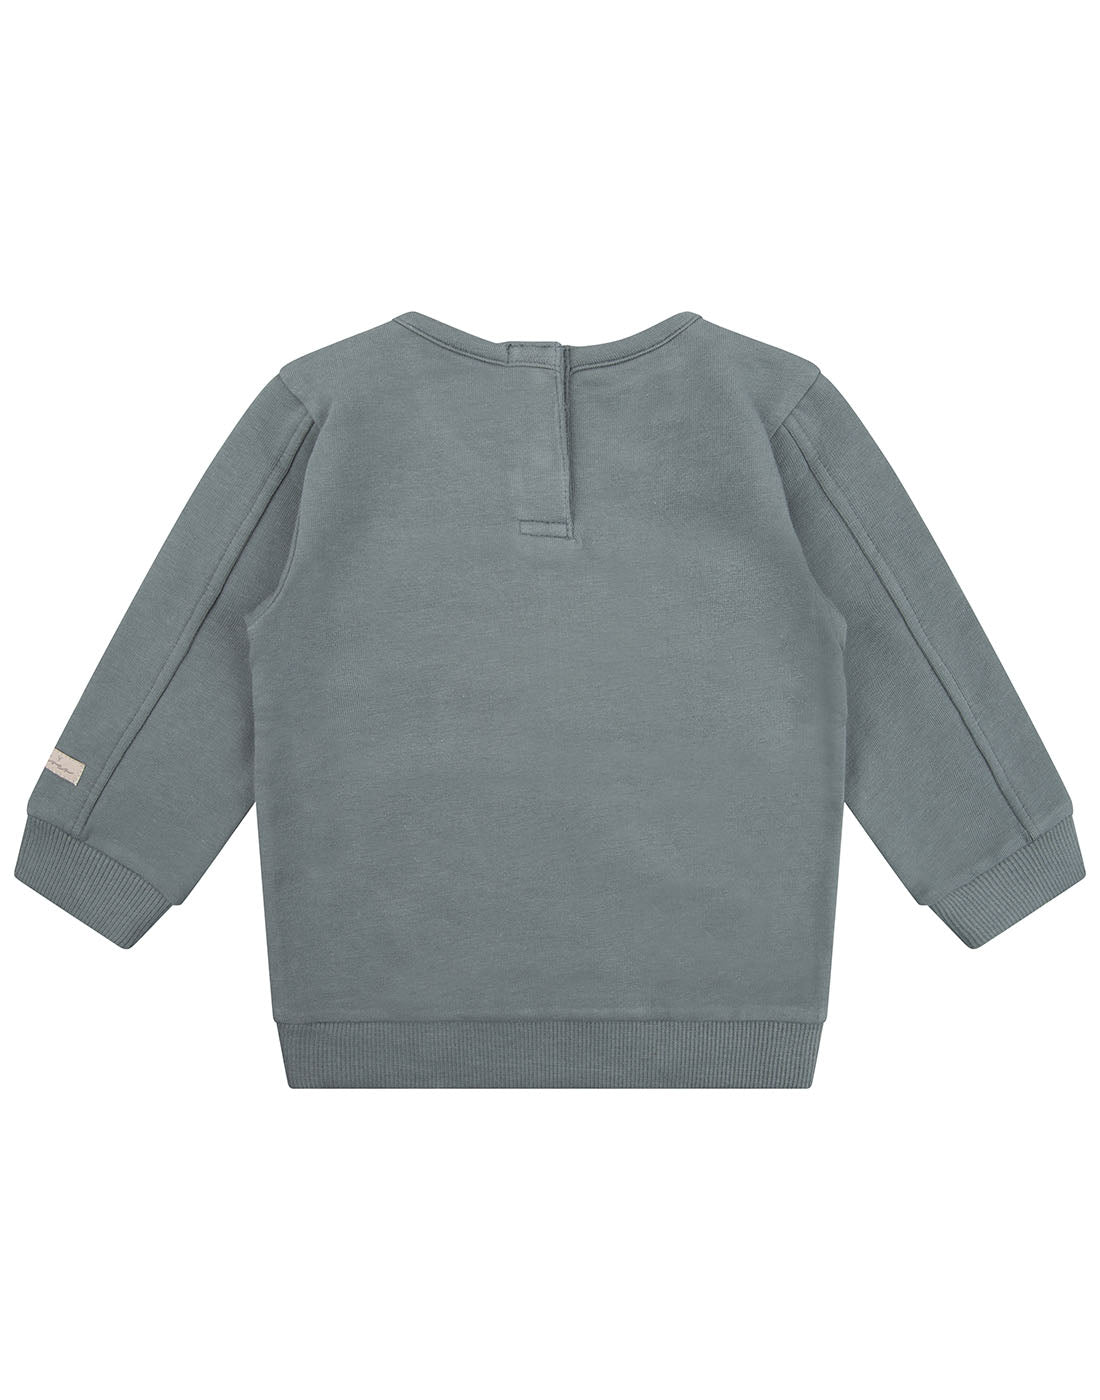 Daily7 Sweater Crewneck Kangaroo Pocket